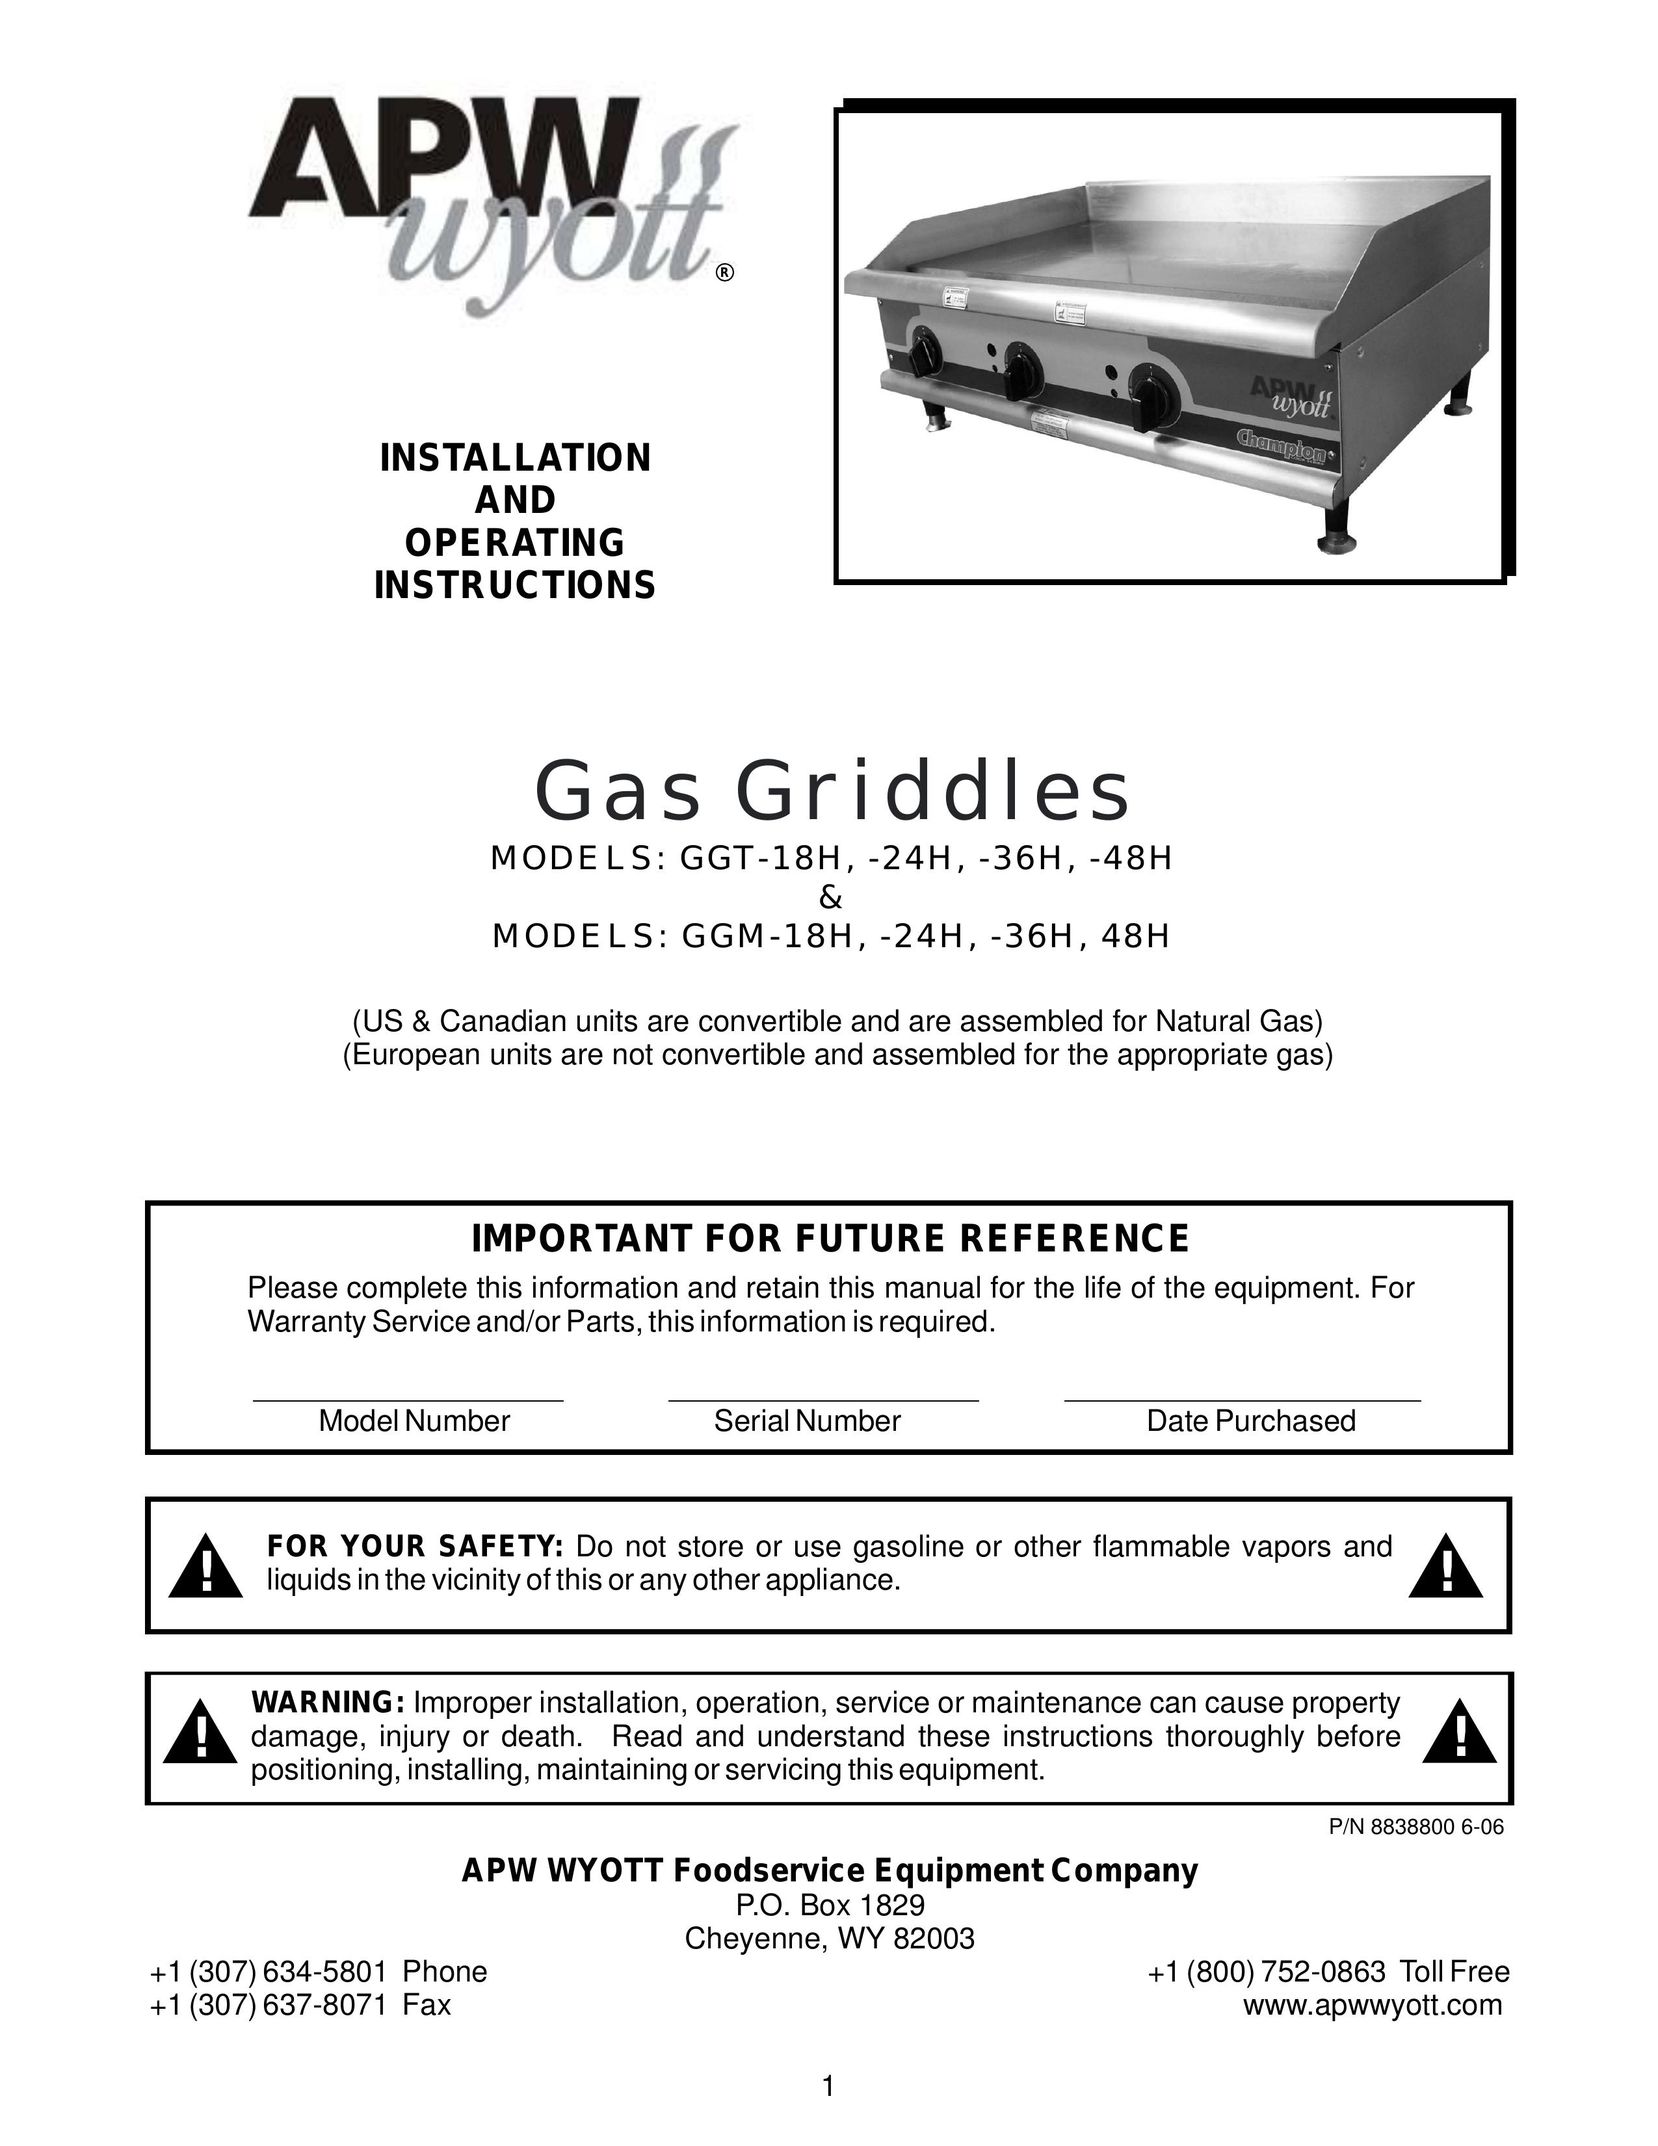 APW Wyott GGM-48H Griddle User Manual